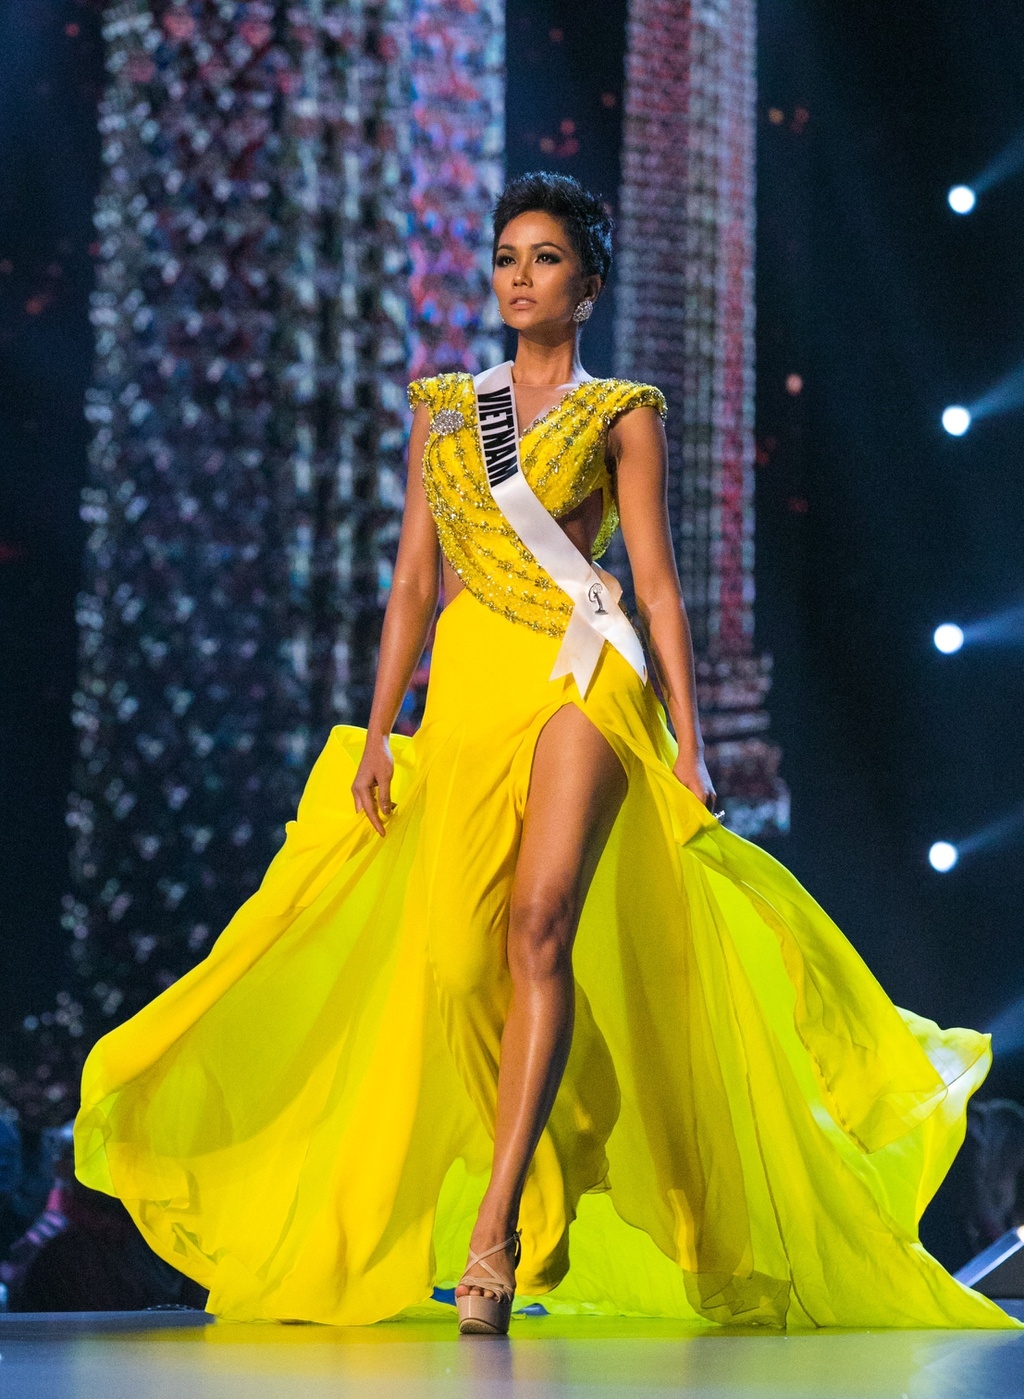 Những cú xoay váy tạo nên "dấu ấn" của các thí sinh tại Miss Universe